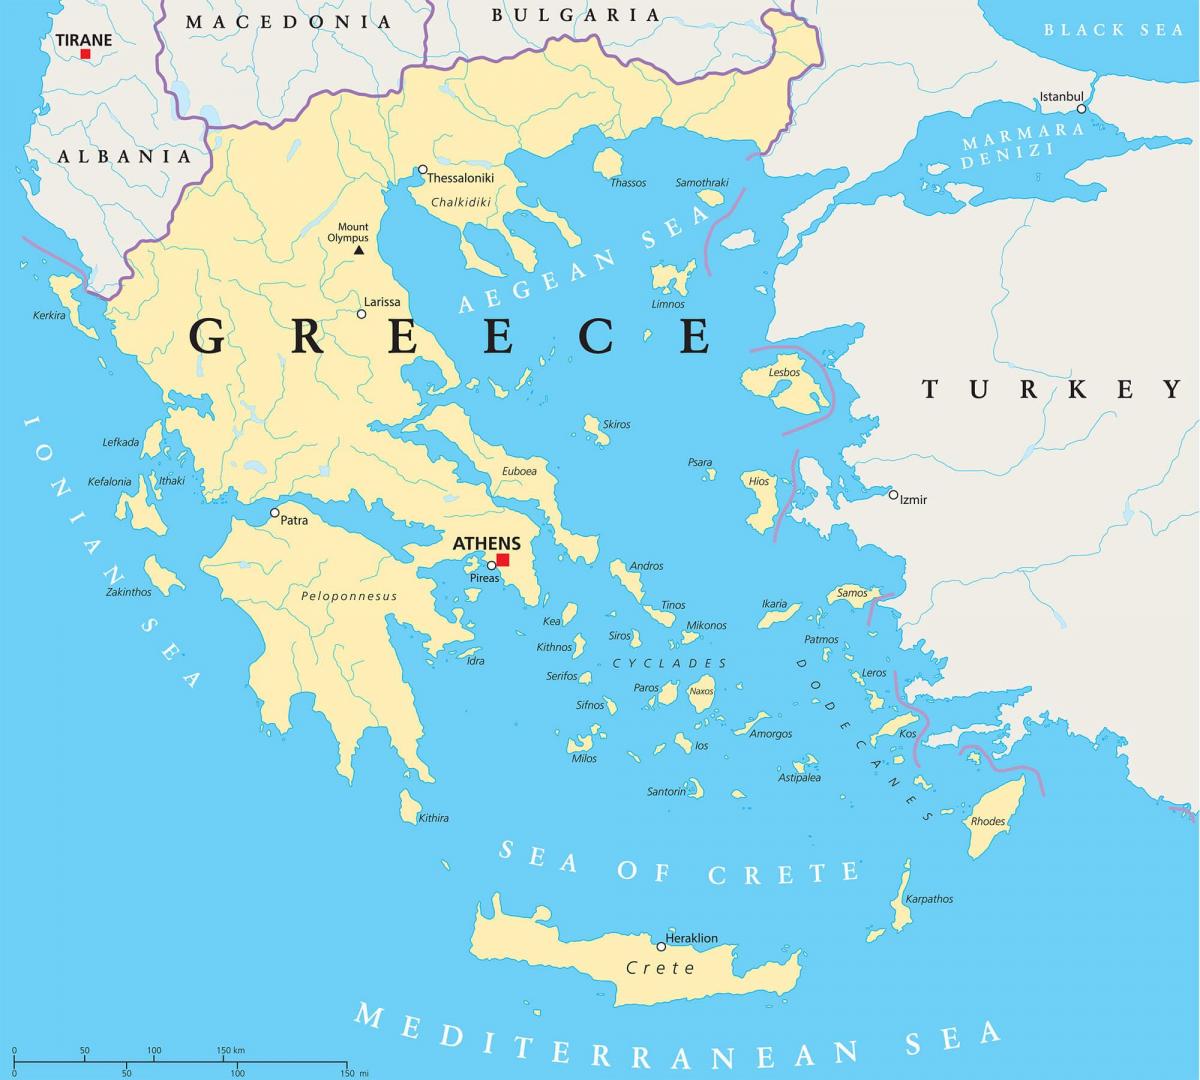 Haritada Yunanistan